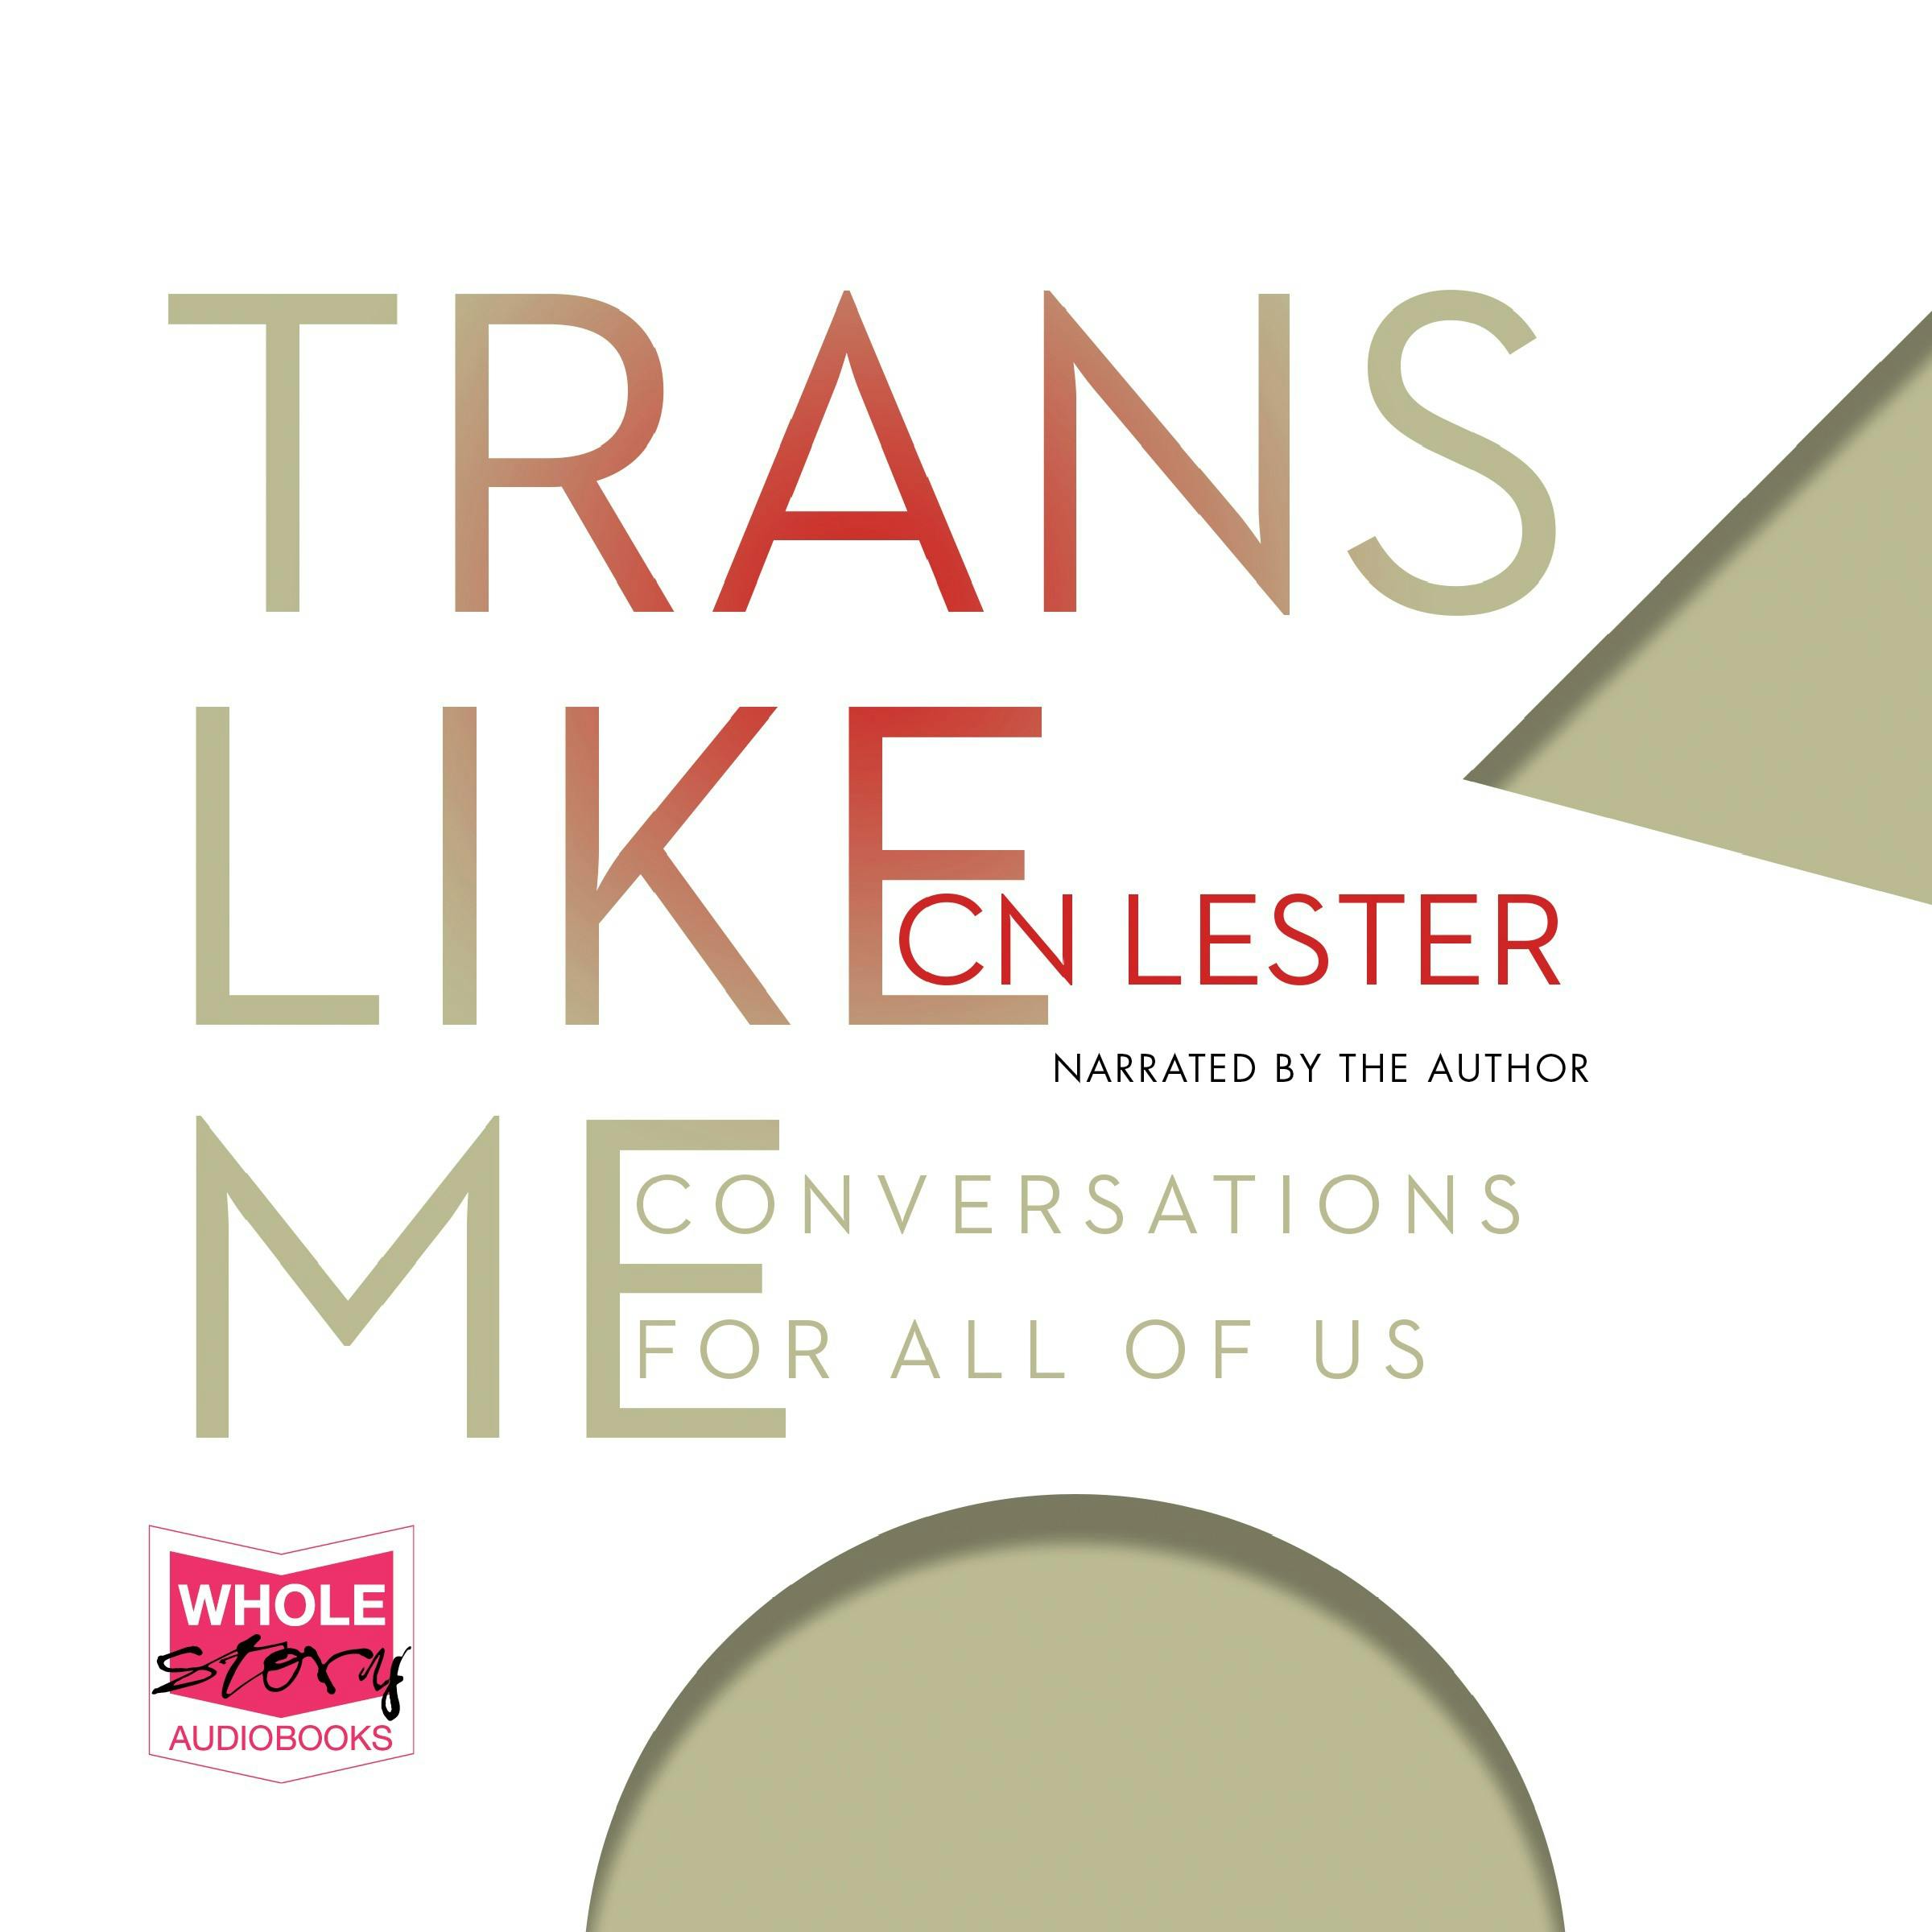 Trans Like Me - CN Lester